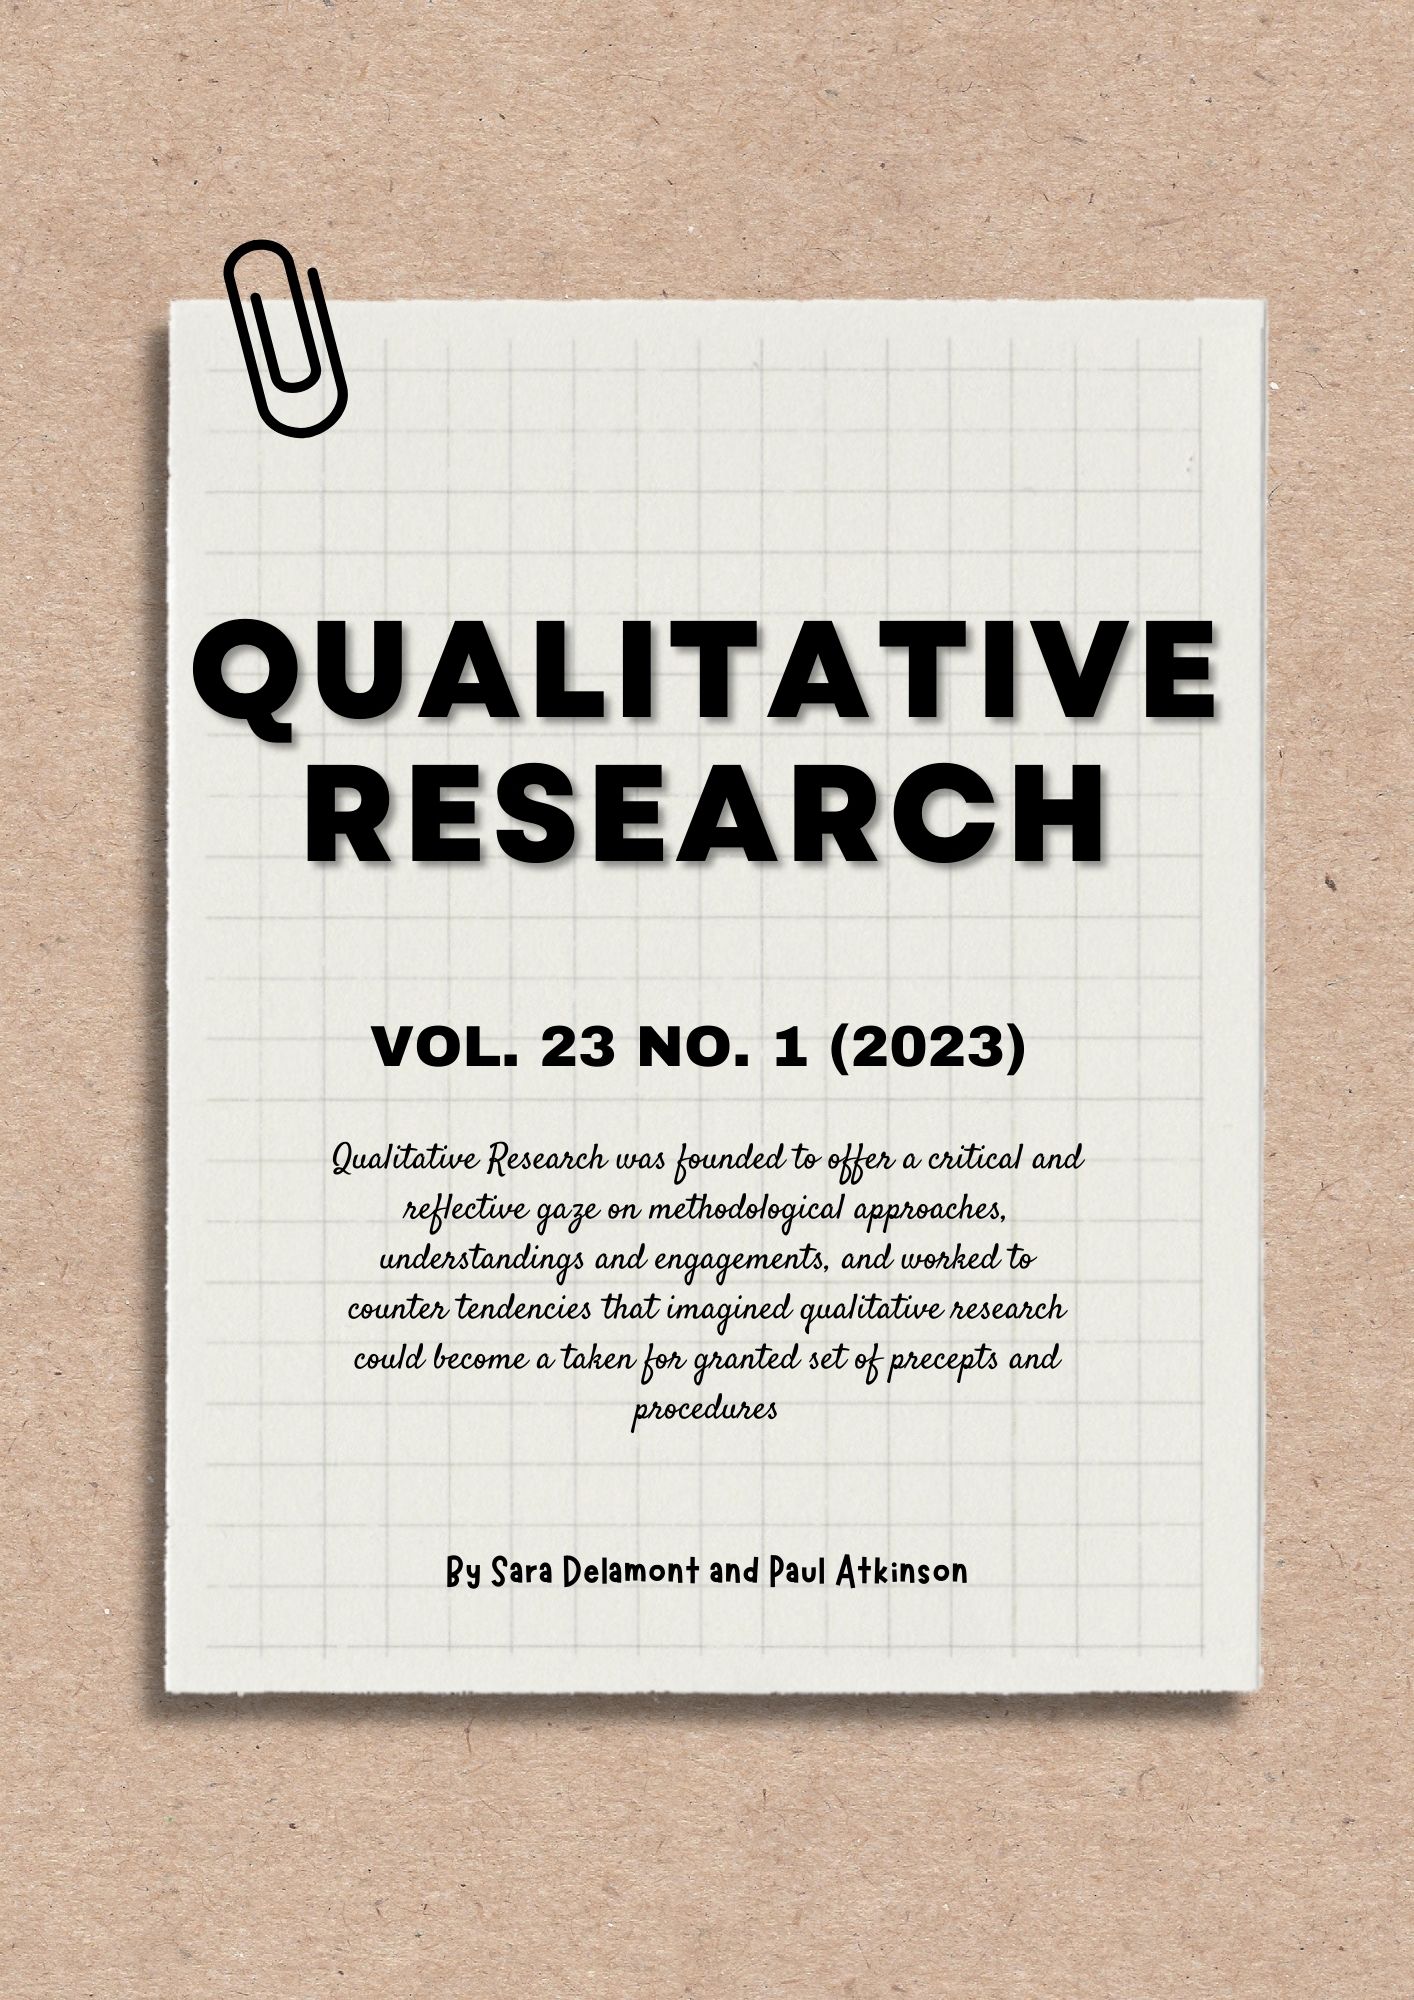 qualitative research journal emerald